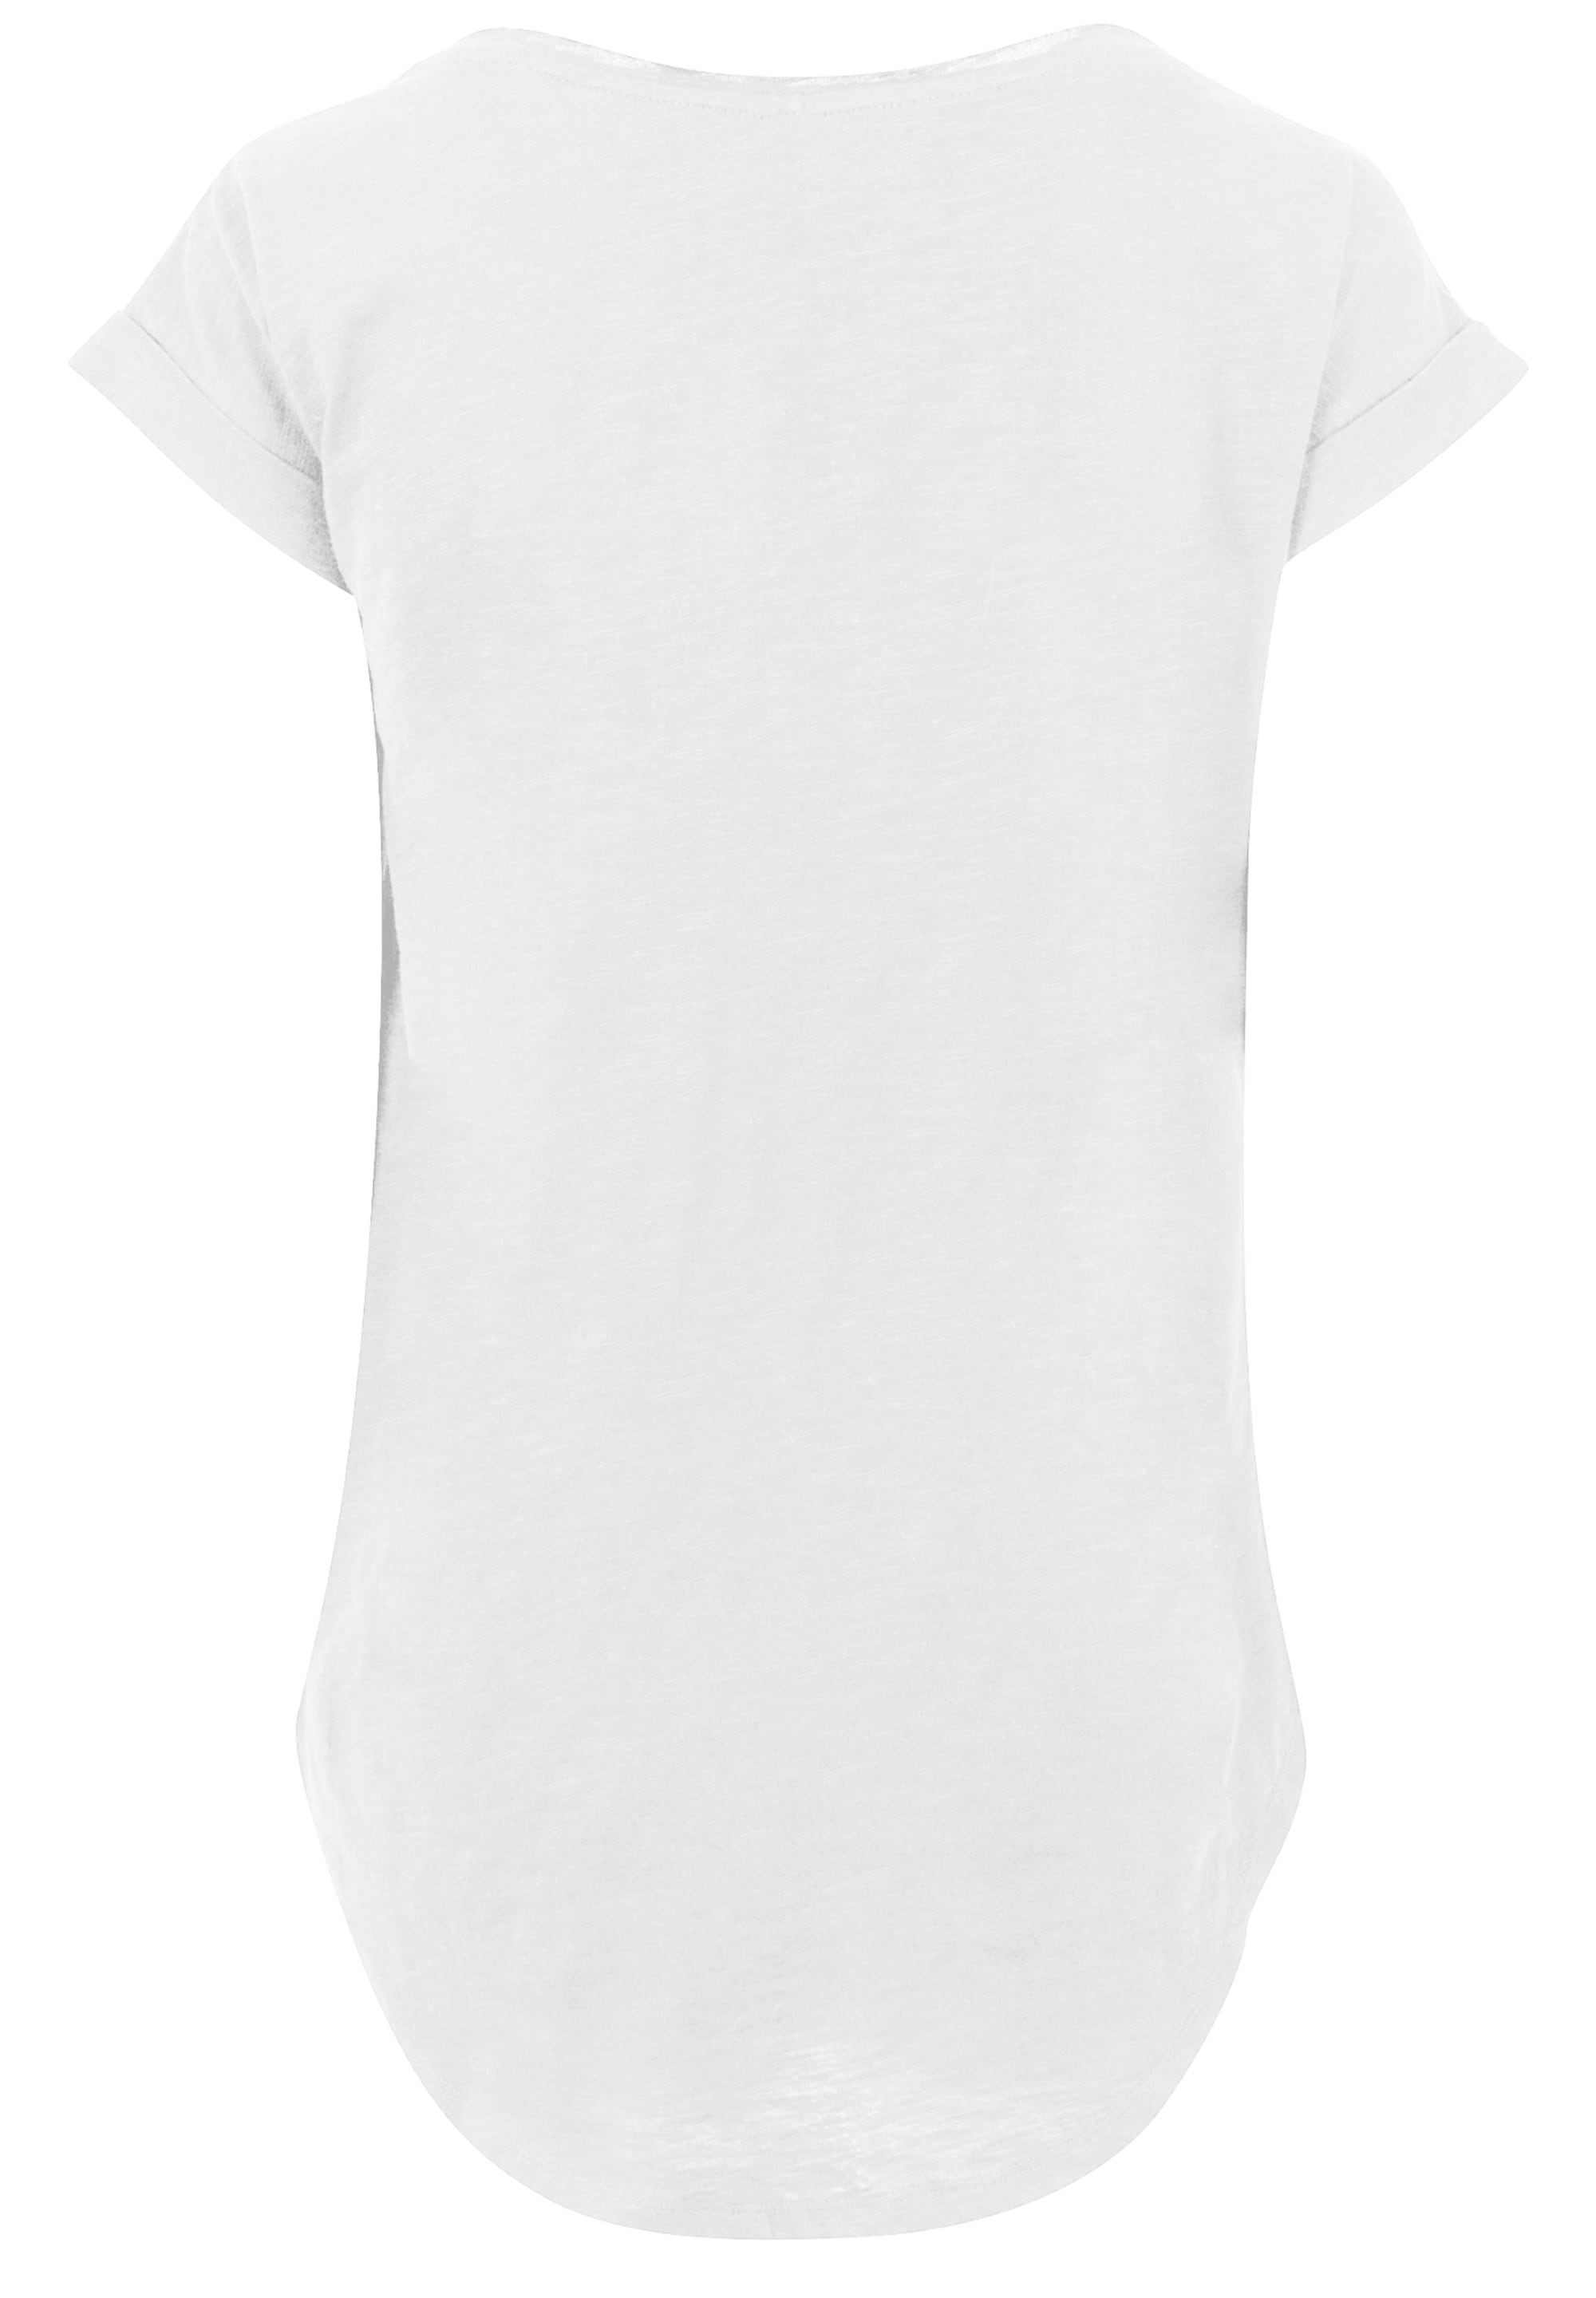 F4NT4STIC T-Shirt »Frozen 2 Believe In The Journey\'«, Print für bestellen |  BAUR